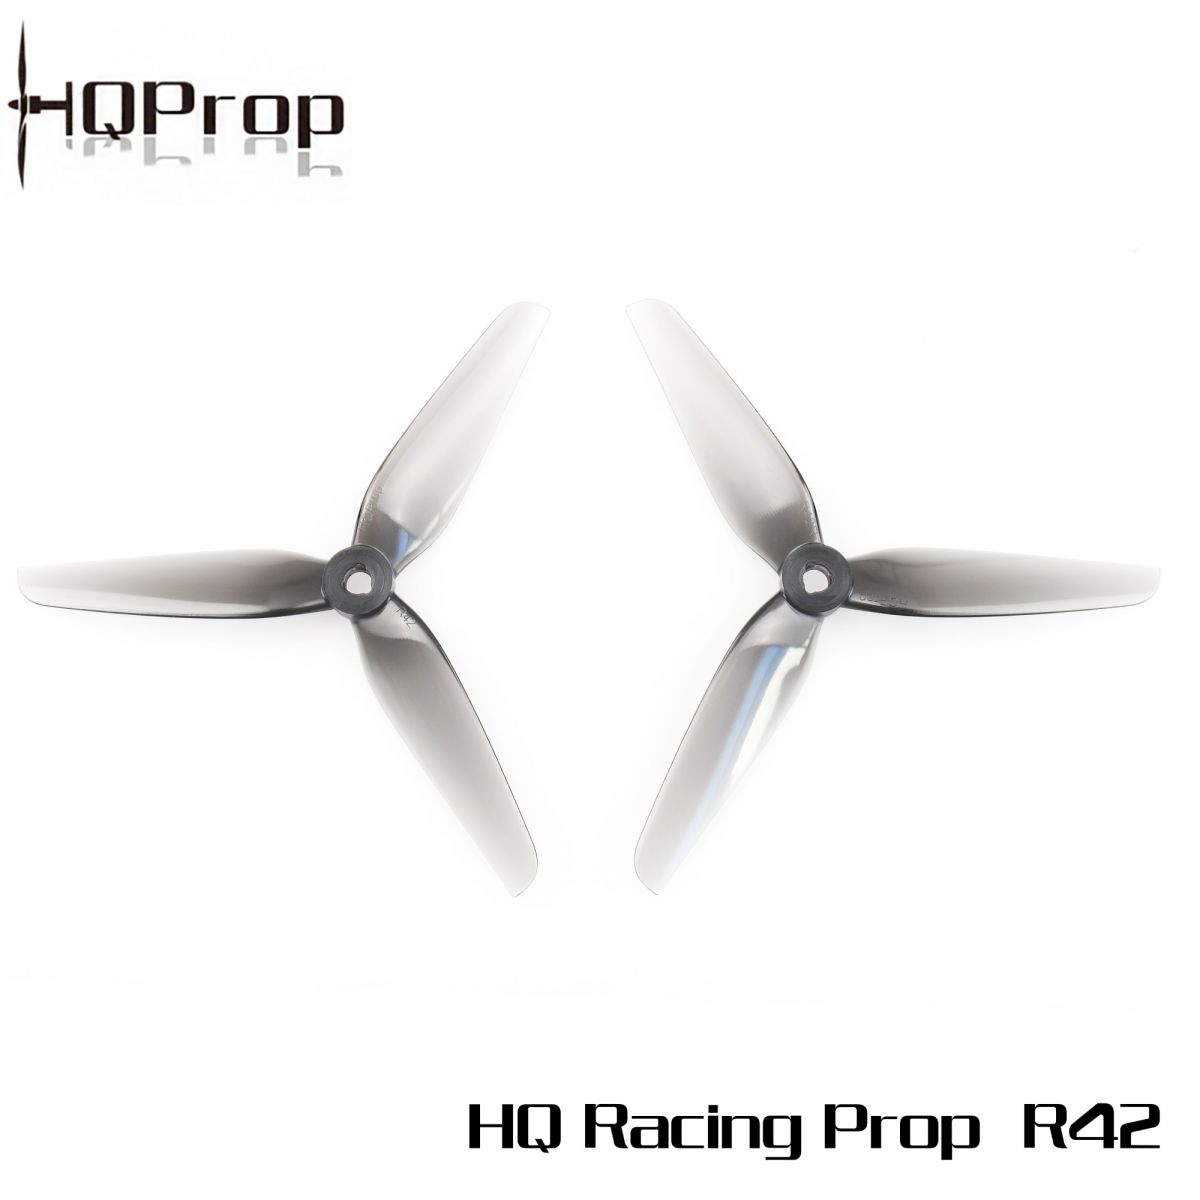 HQ Racing Prop R42 PC 5.1x4.2x3 5142 Gray